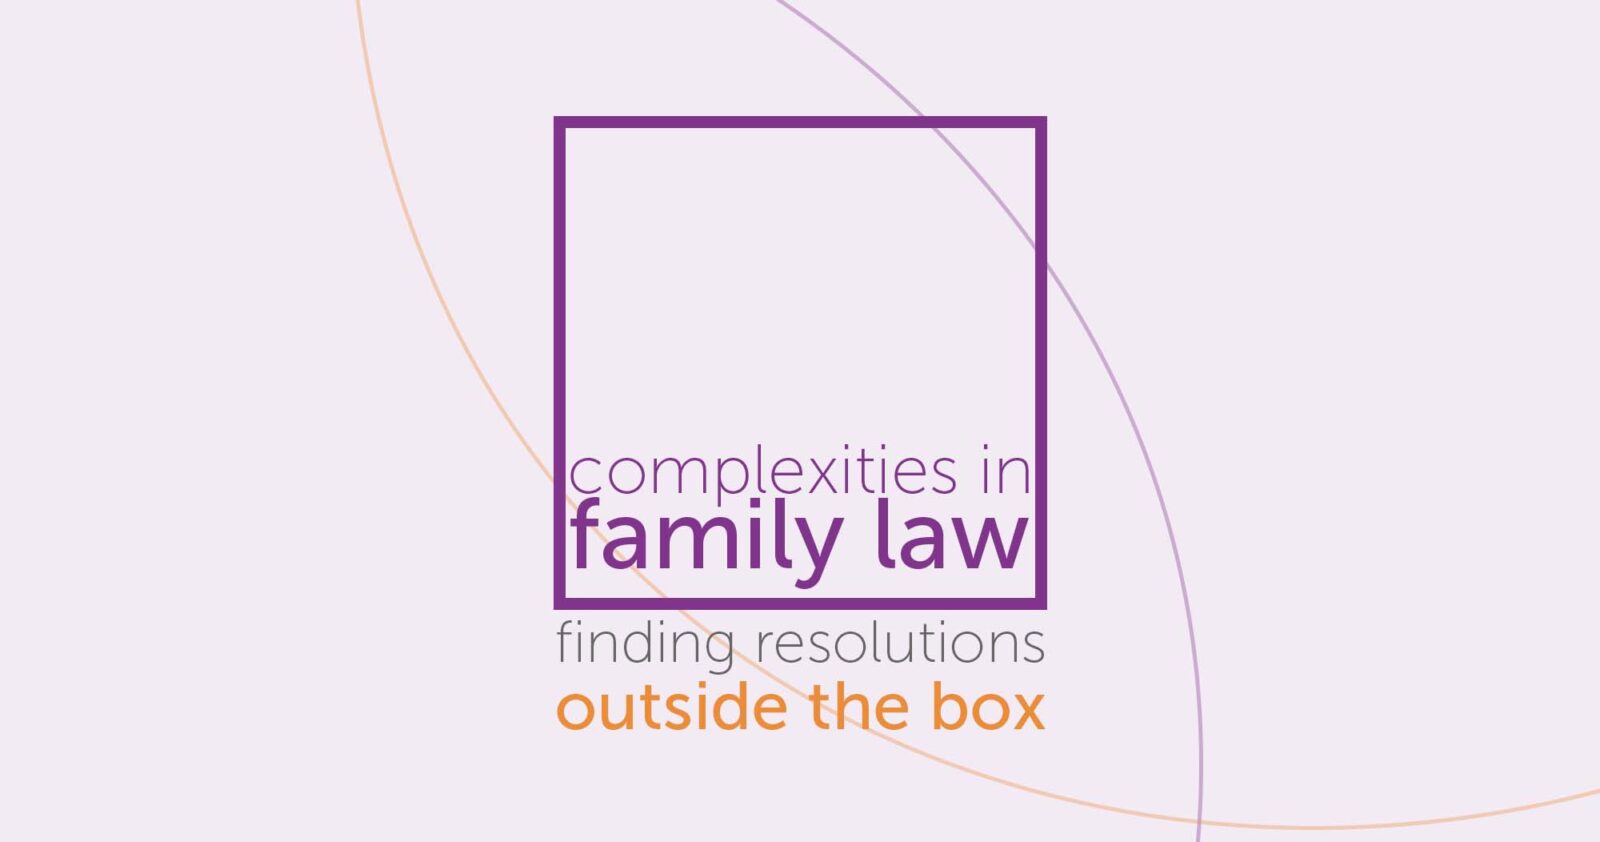 Family lawyers - RWK Goodman